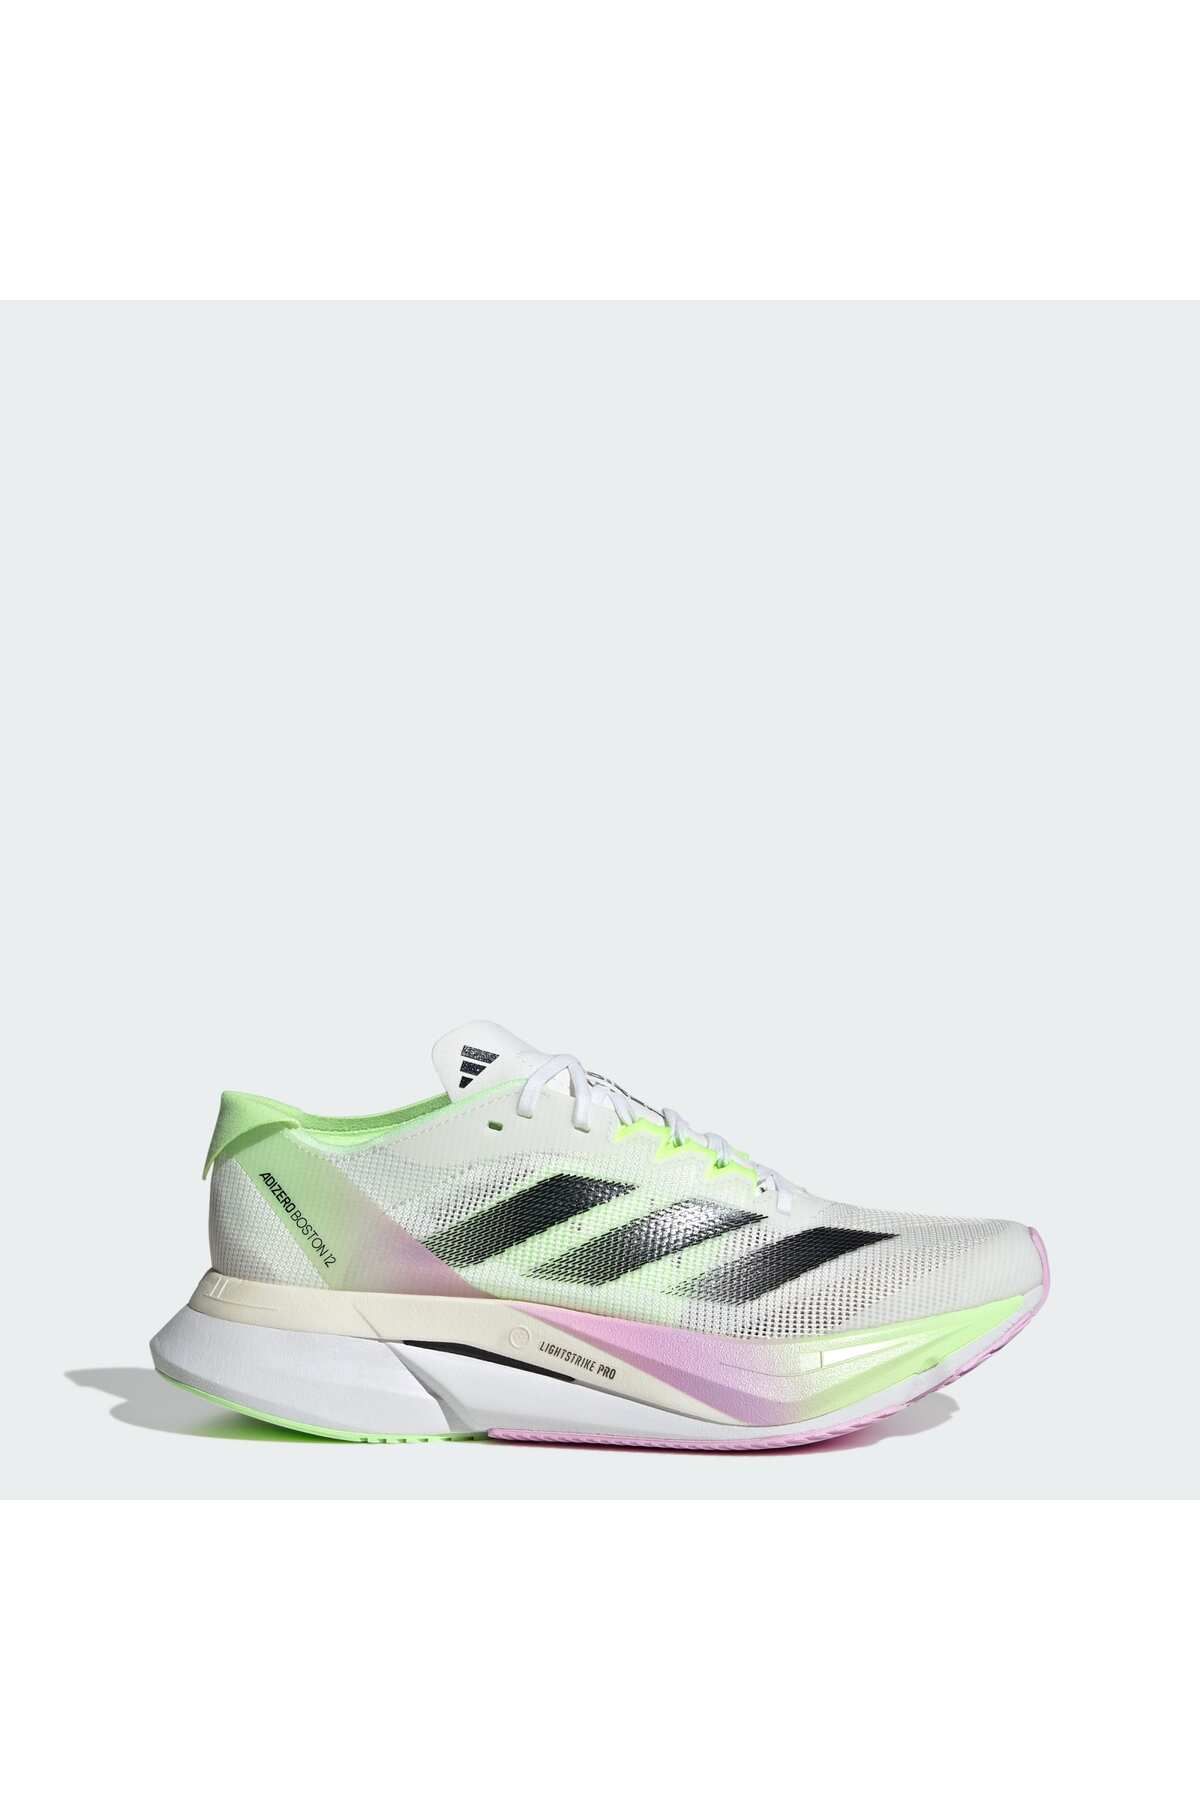 adidas ADIZERO BOSTON 12 W BEYAZ Kadın Koşu Ayakkabısı